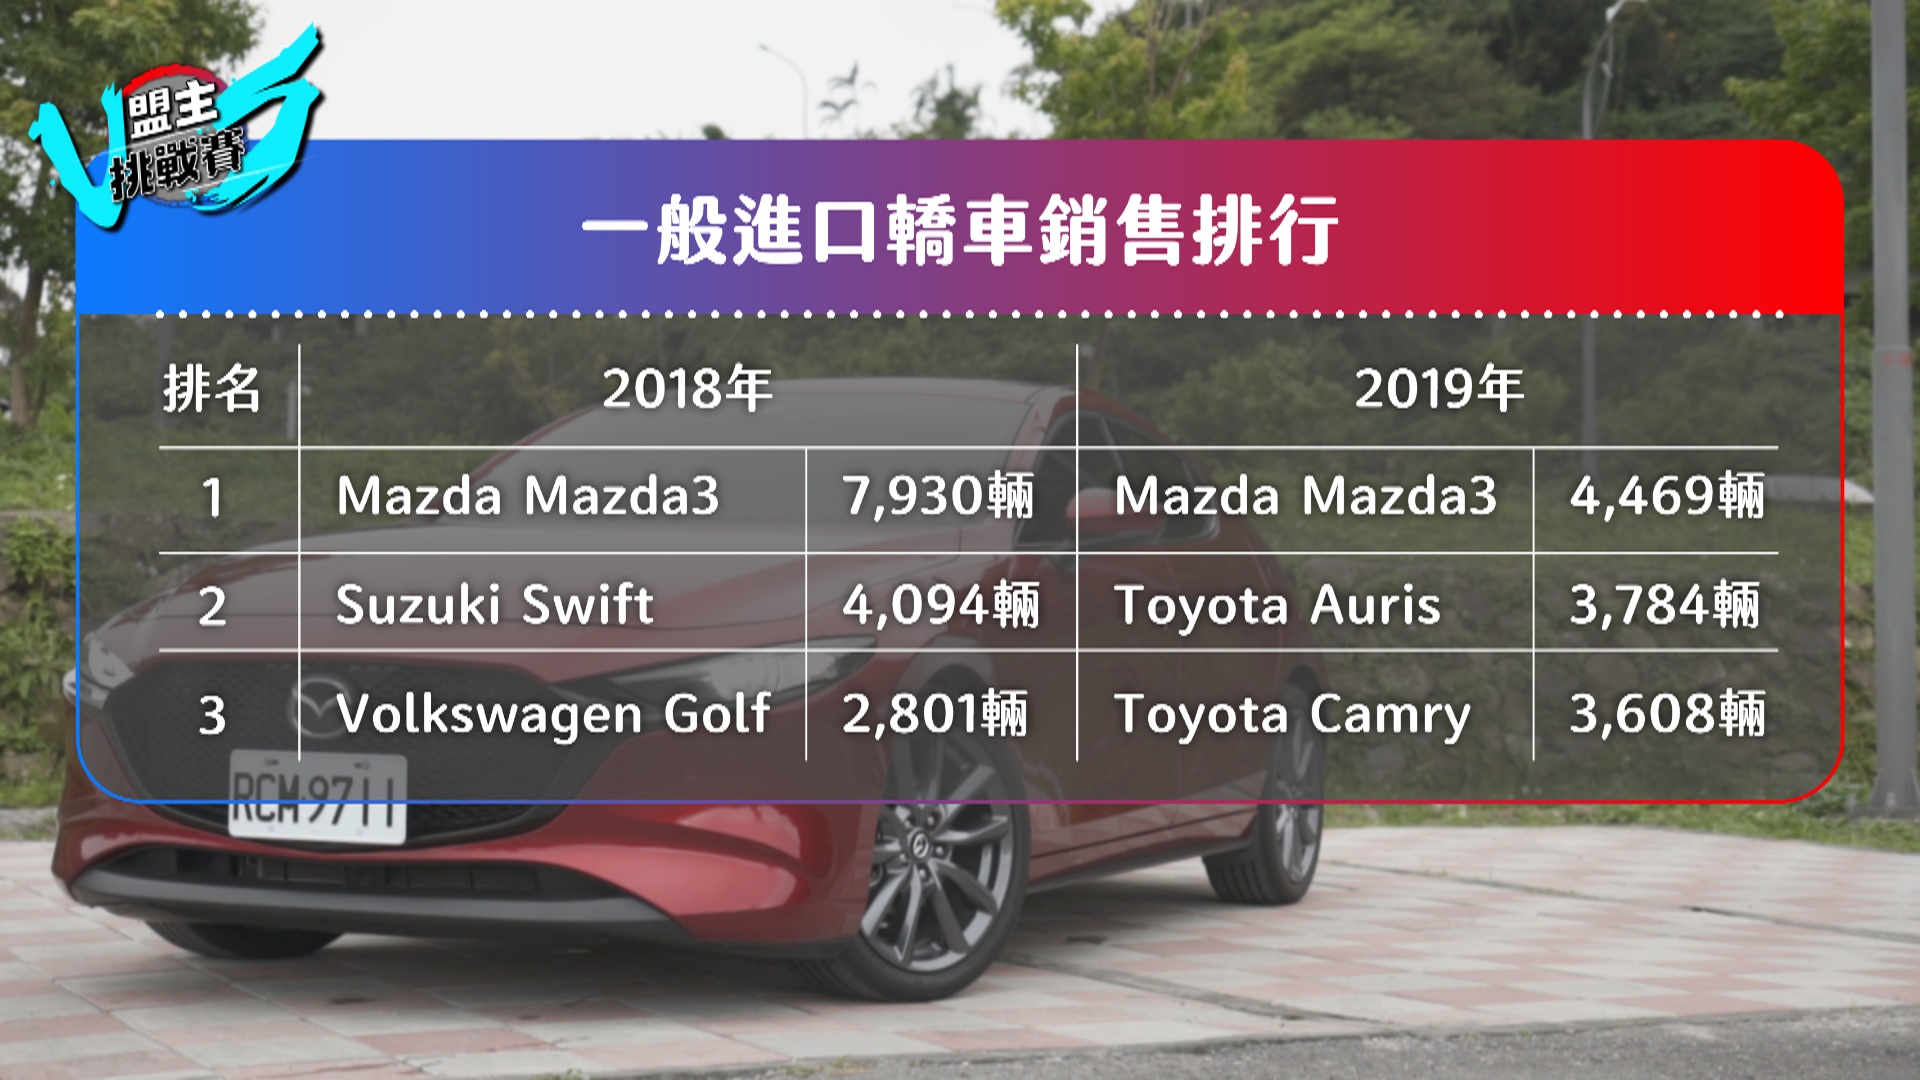 Mazda3 憑藉進口身份國產價格，一直受到消費者的肯定。